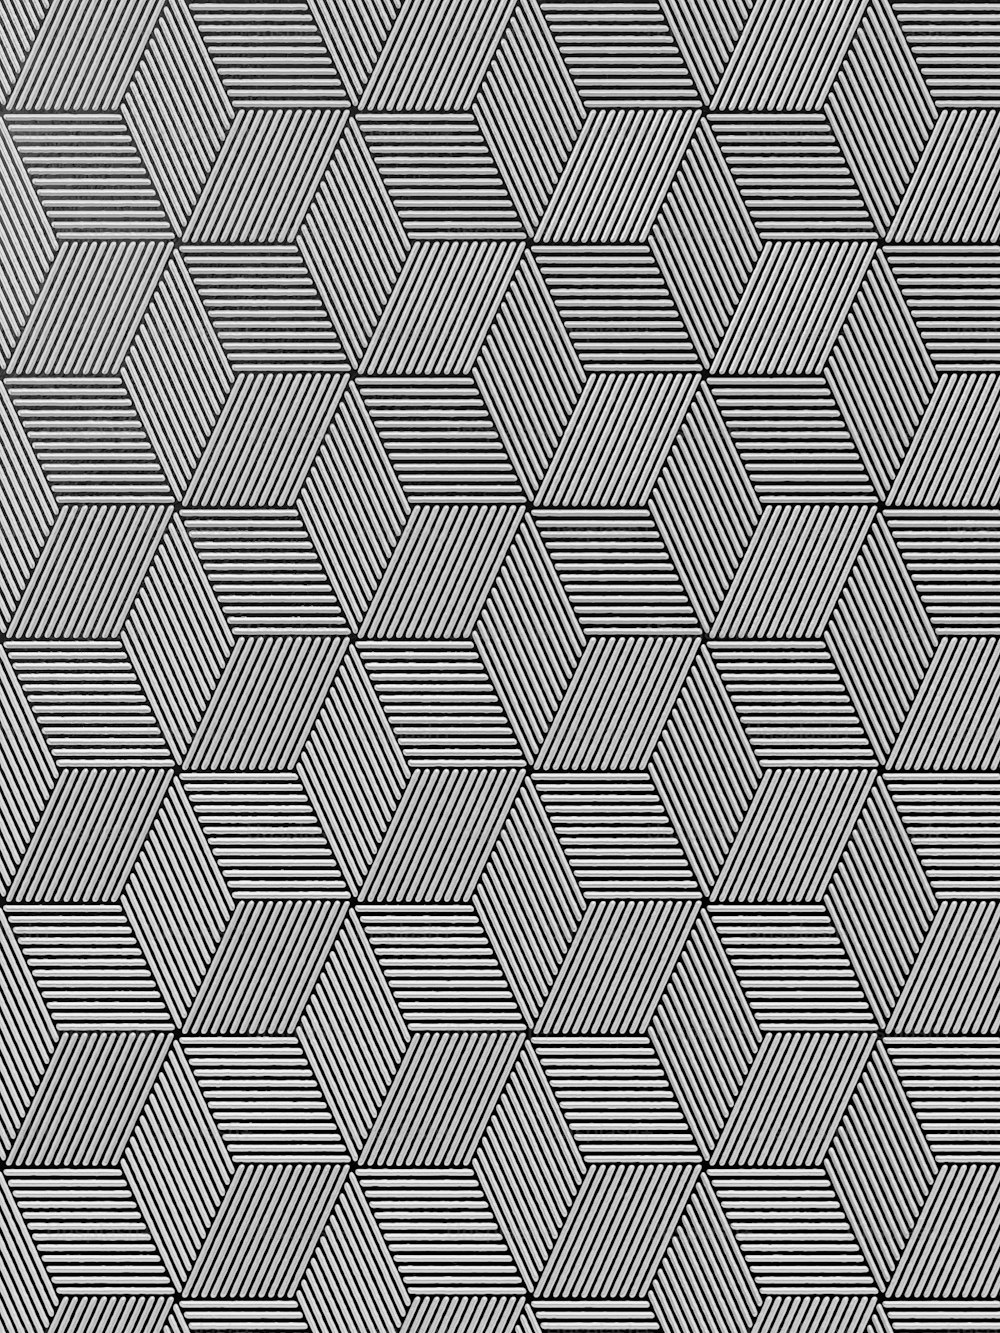 Una foto en blanco y negro de un patrón